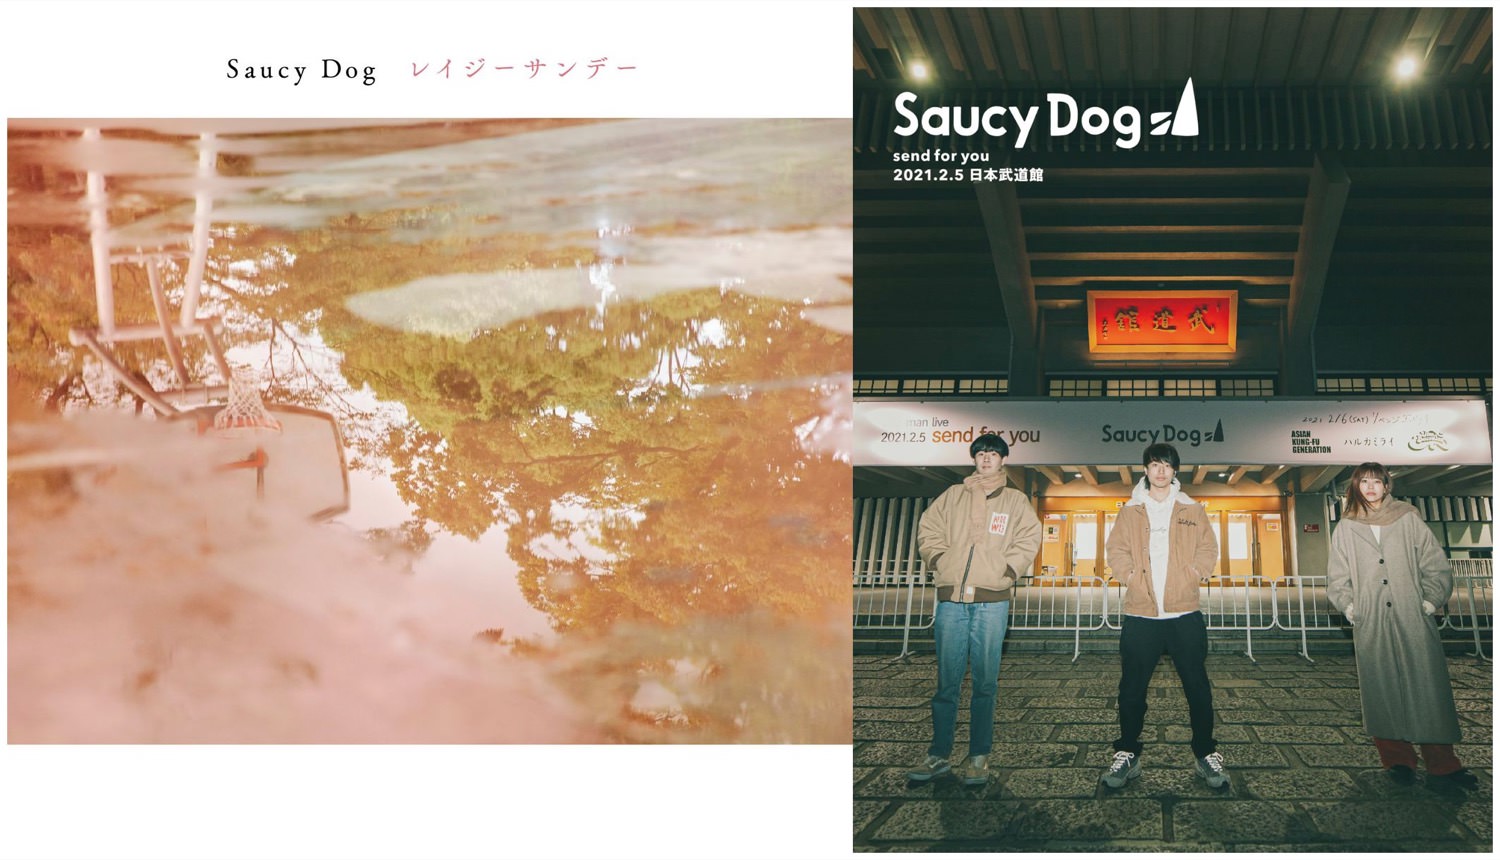 Saucy 2 Dog/「send for you」2021.2.5 Dog／「send 日本武道館 5日本武道館